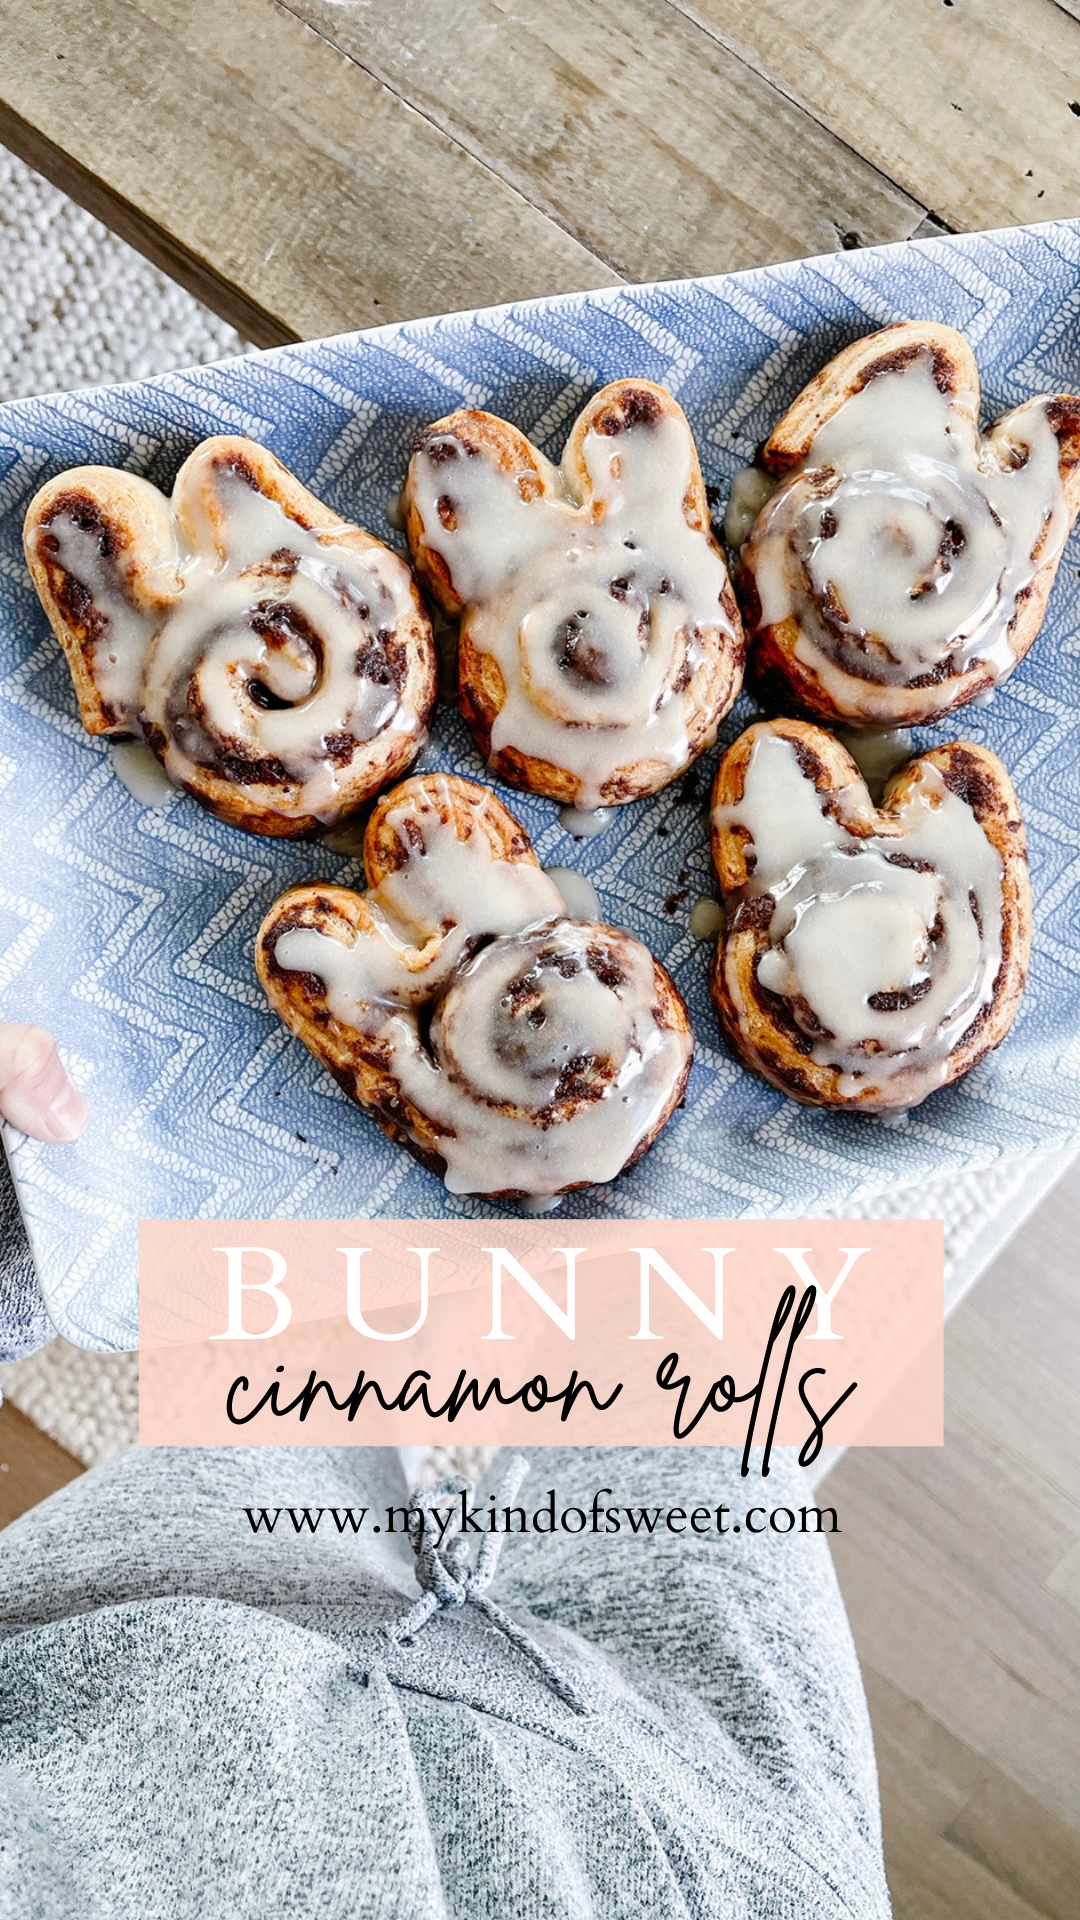 Bunny cinnamon rolls